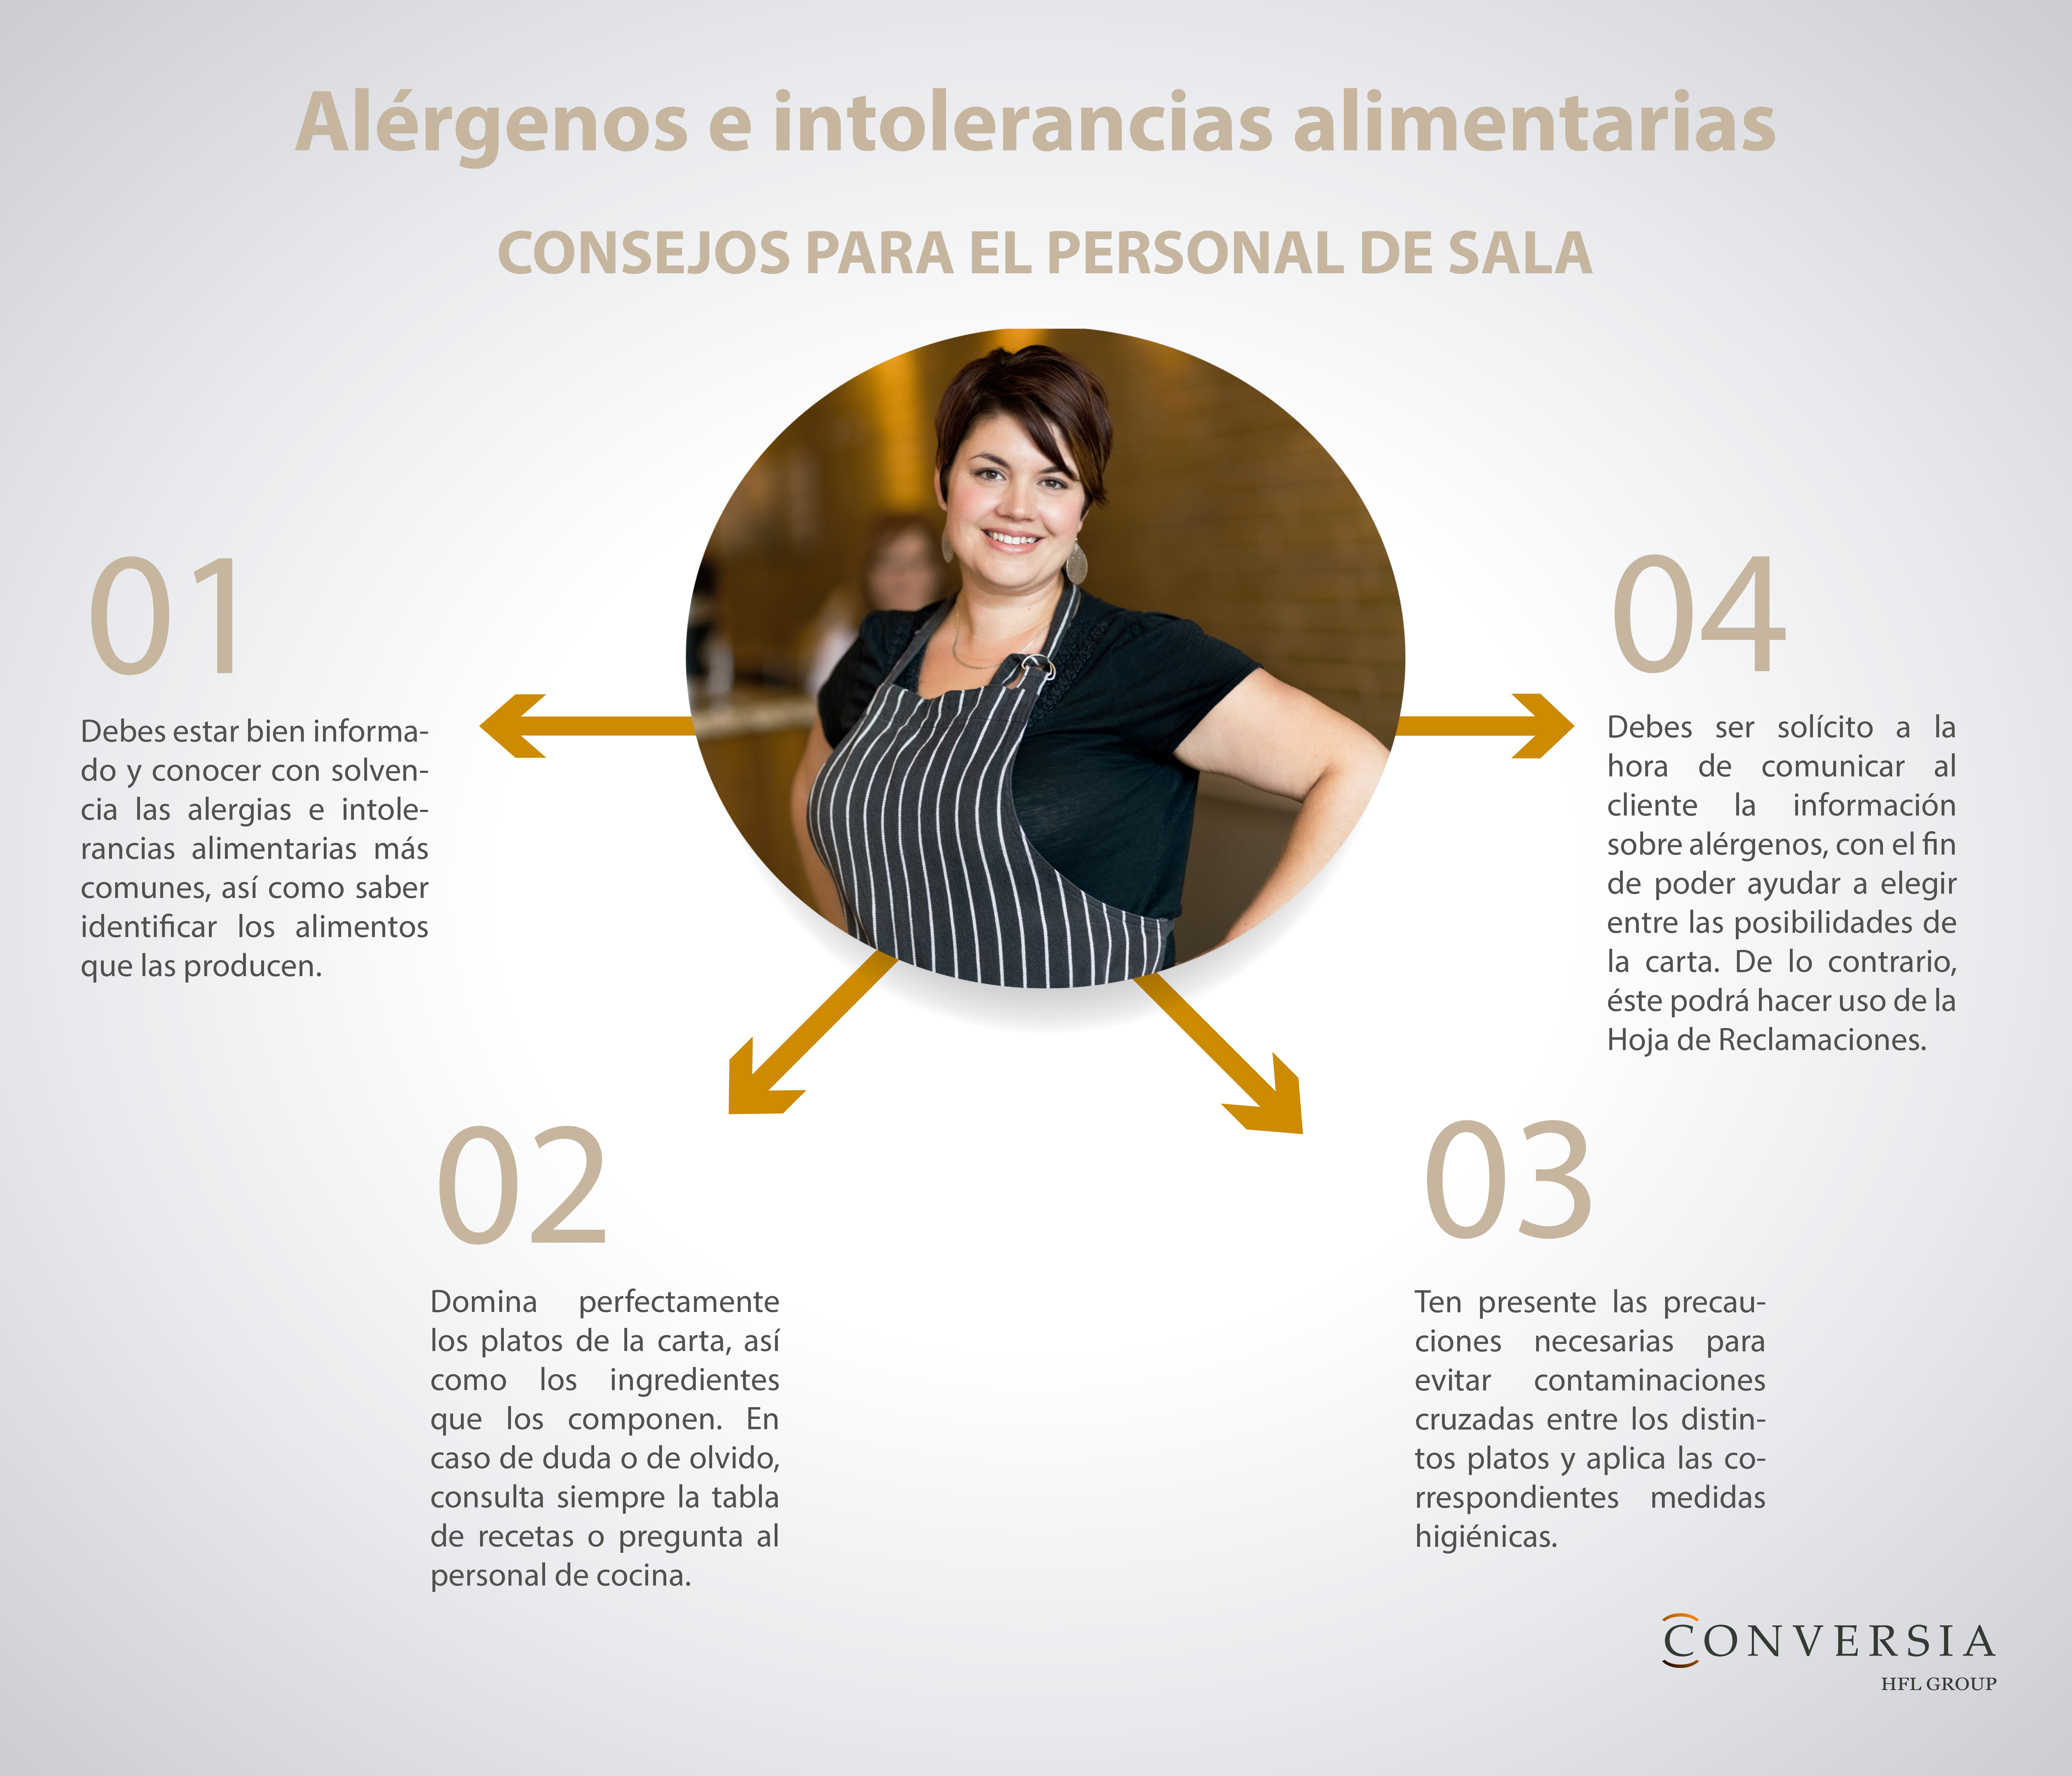 Infografía de Conversia sobre consejos para el personal de sala acerca alérgenos e intolerancias alimentarias